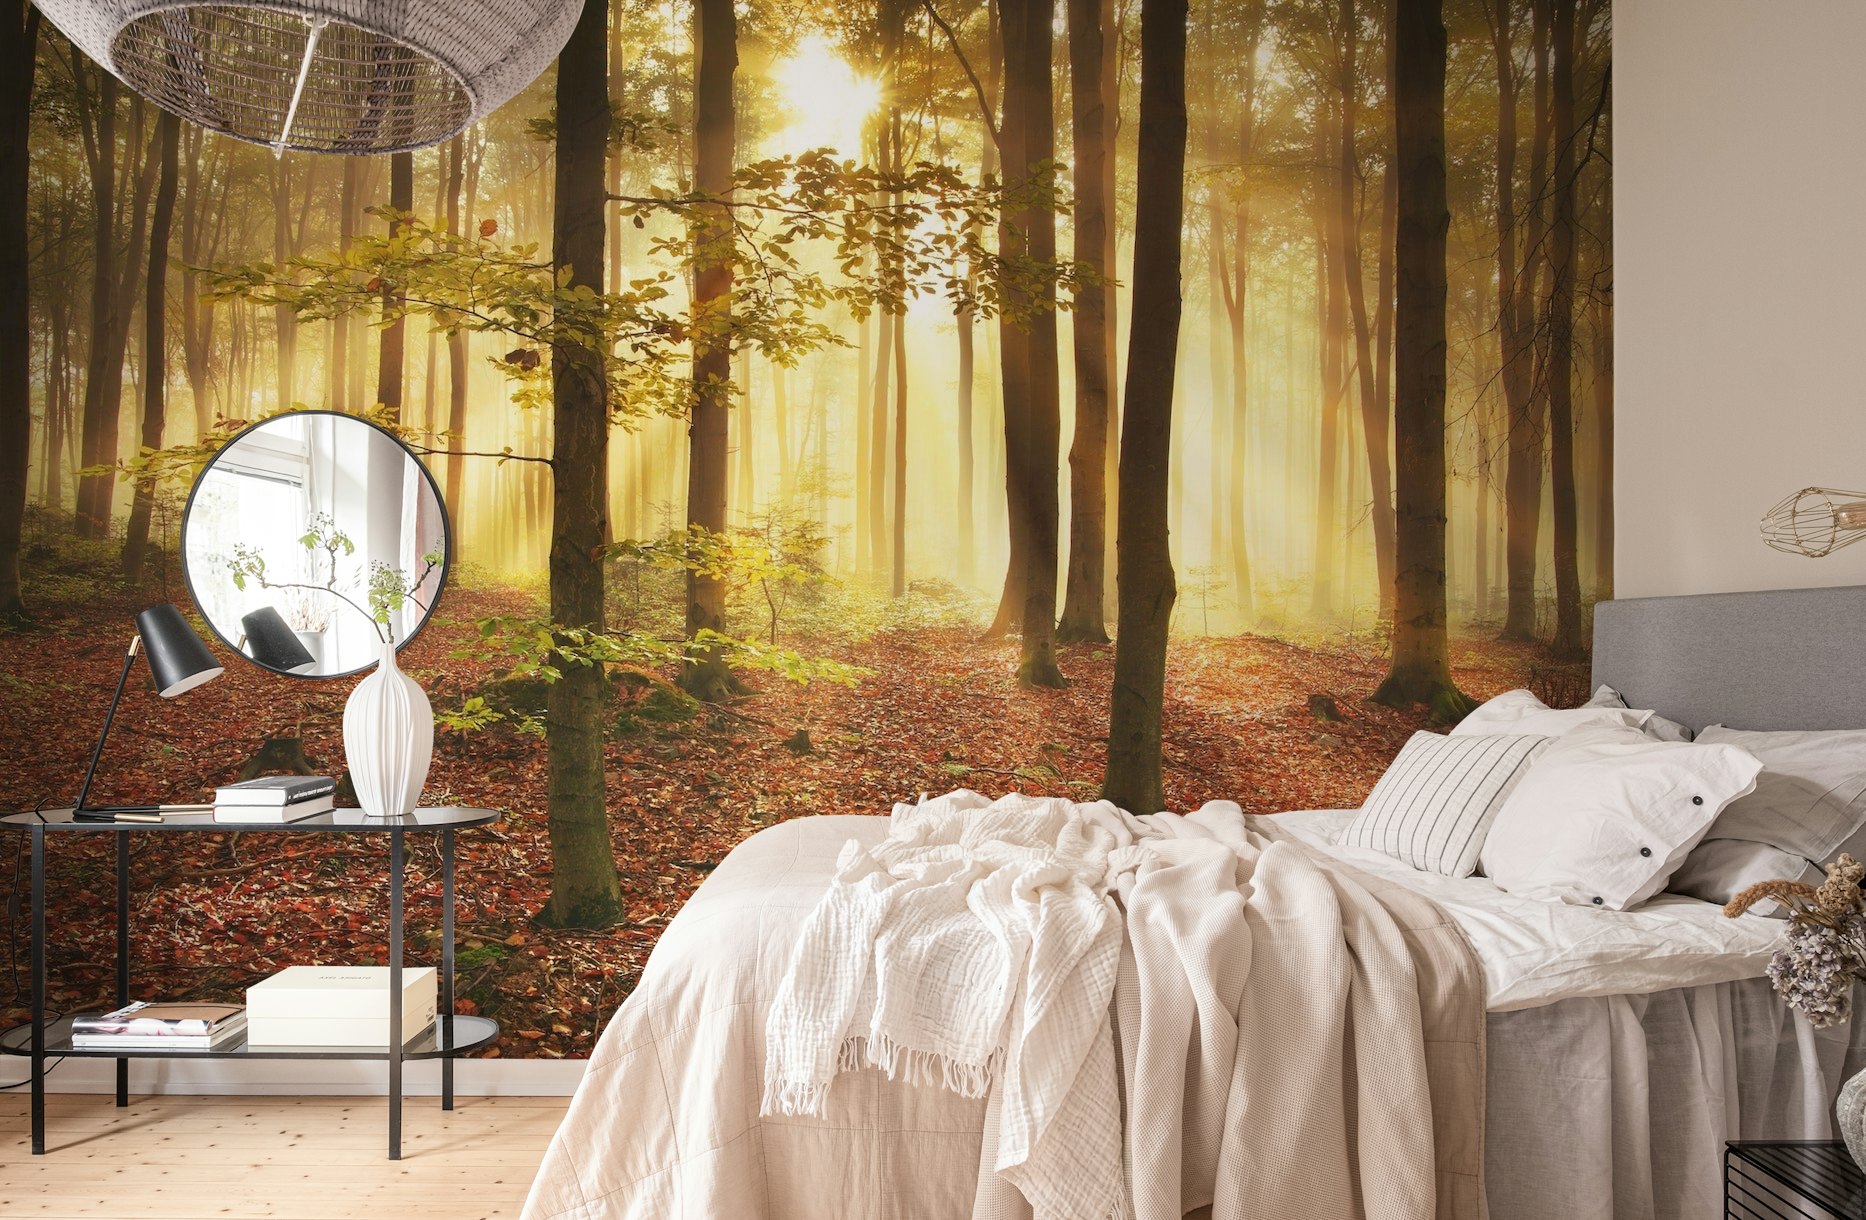 Autumn forest wallpaper